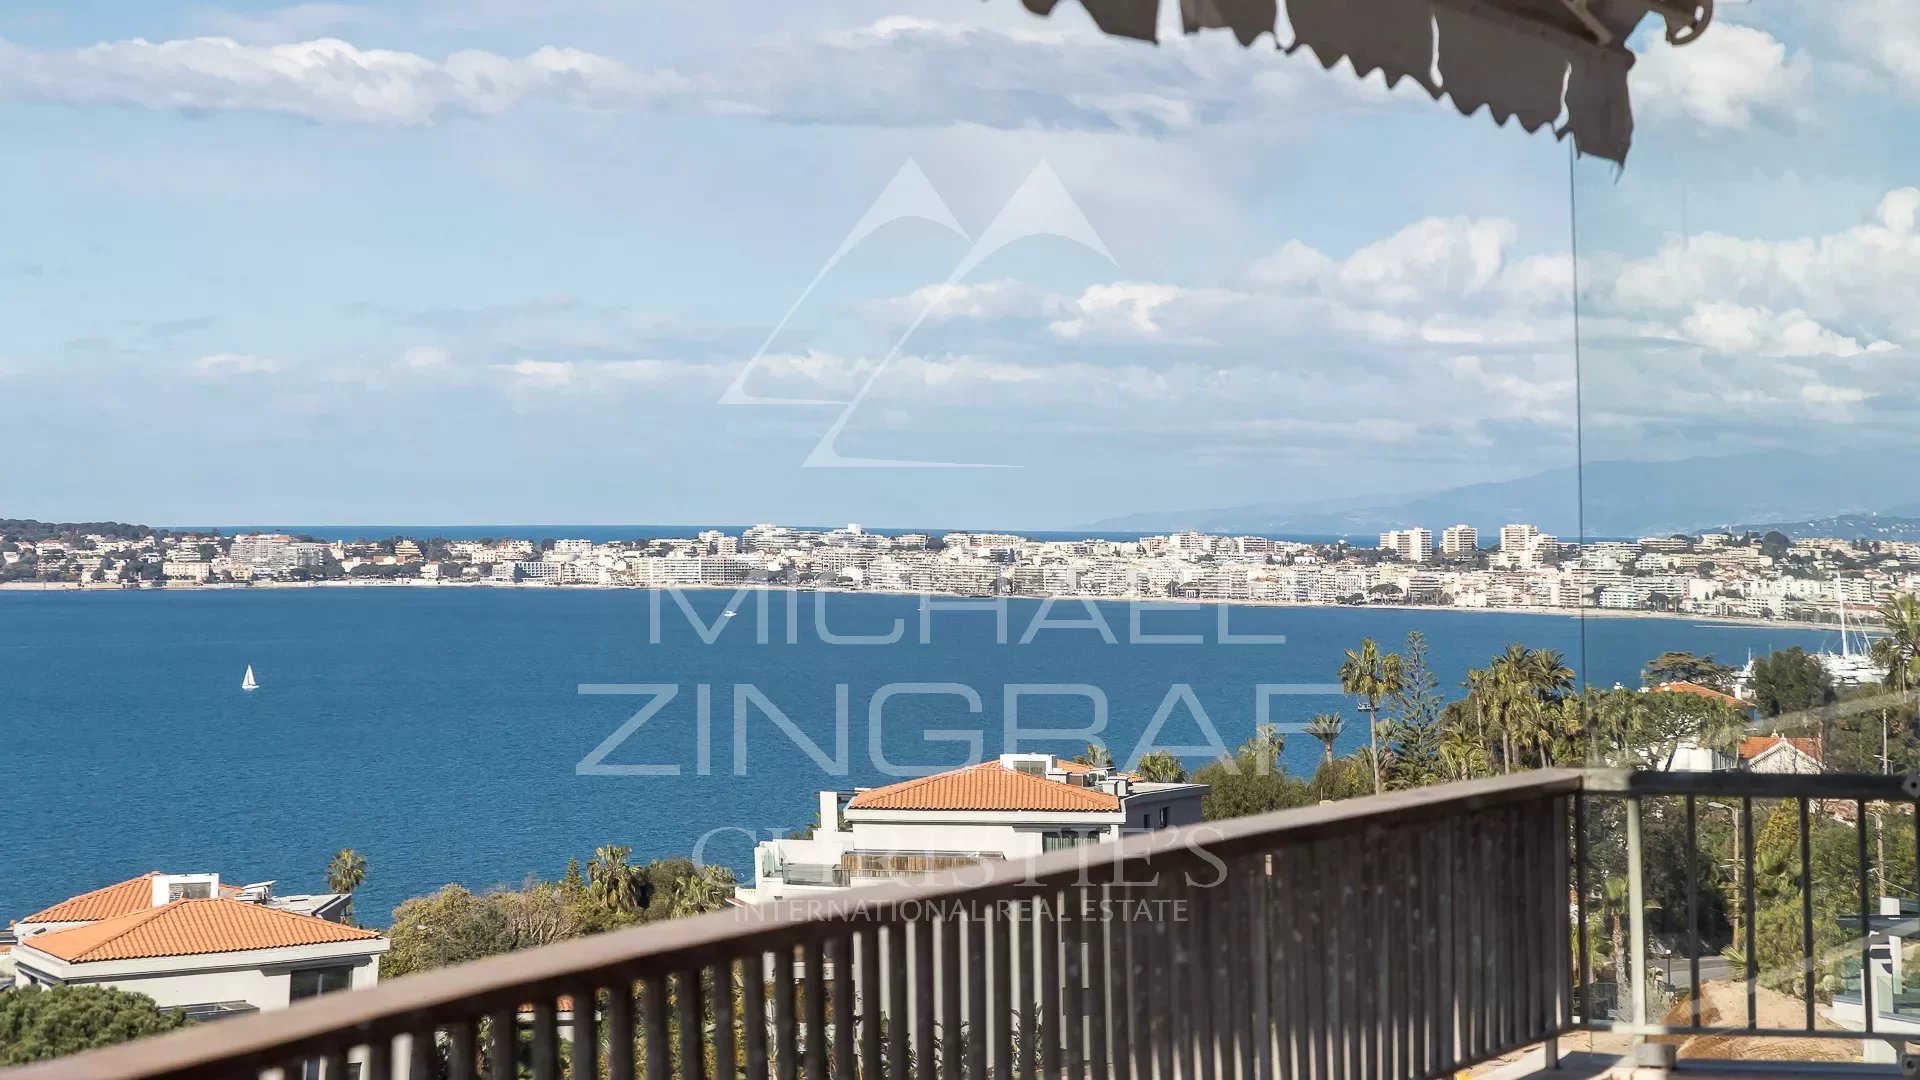 Hervorragende 4-Zimmer-Wohnung mit Panoramablick auf das Meer in einer prestigeträchtigen Residenz